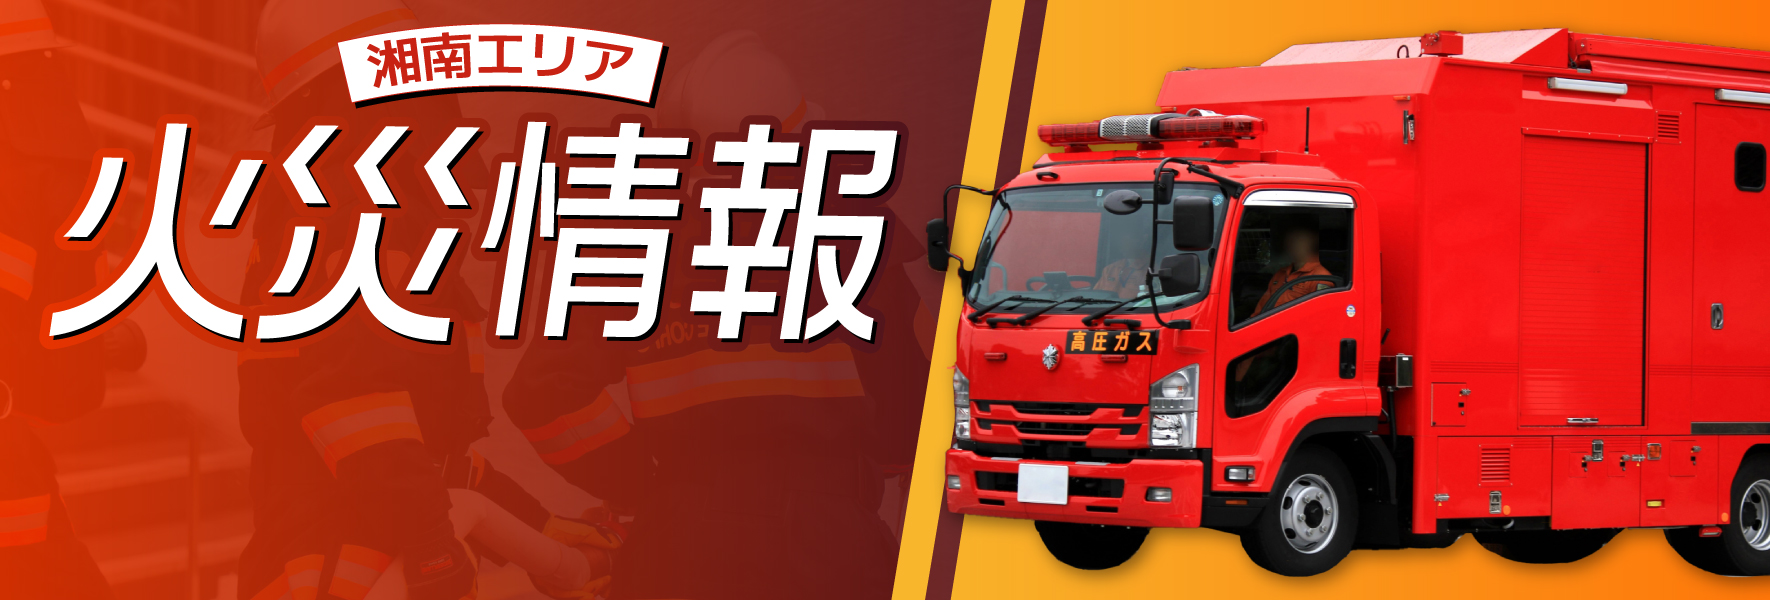 【平塚市】火災情報 5月4日 午後2時17分 久領堤付近